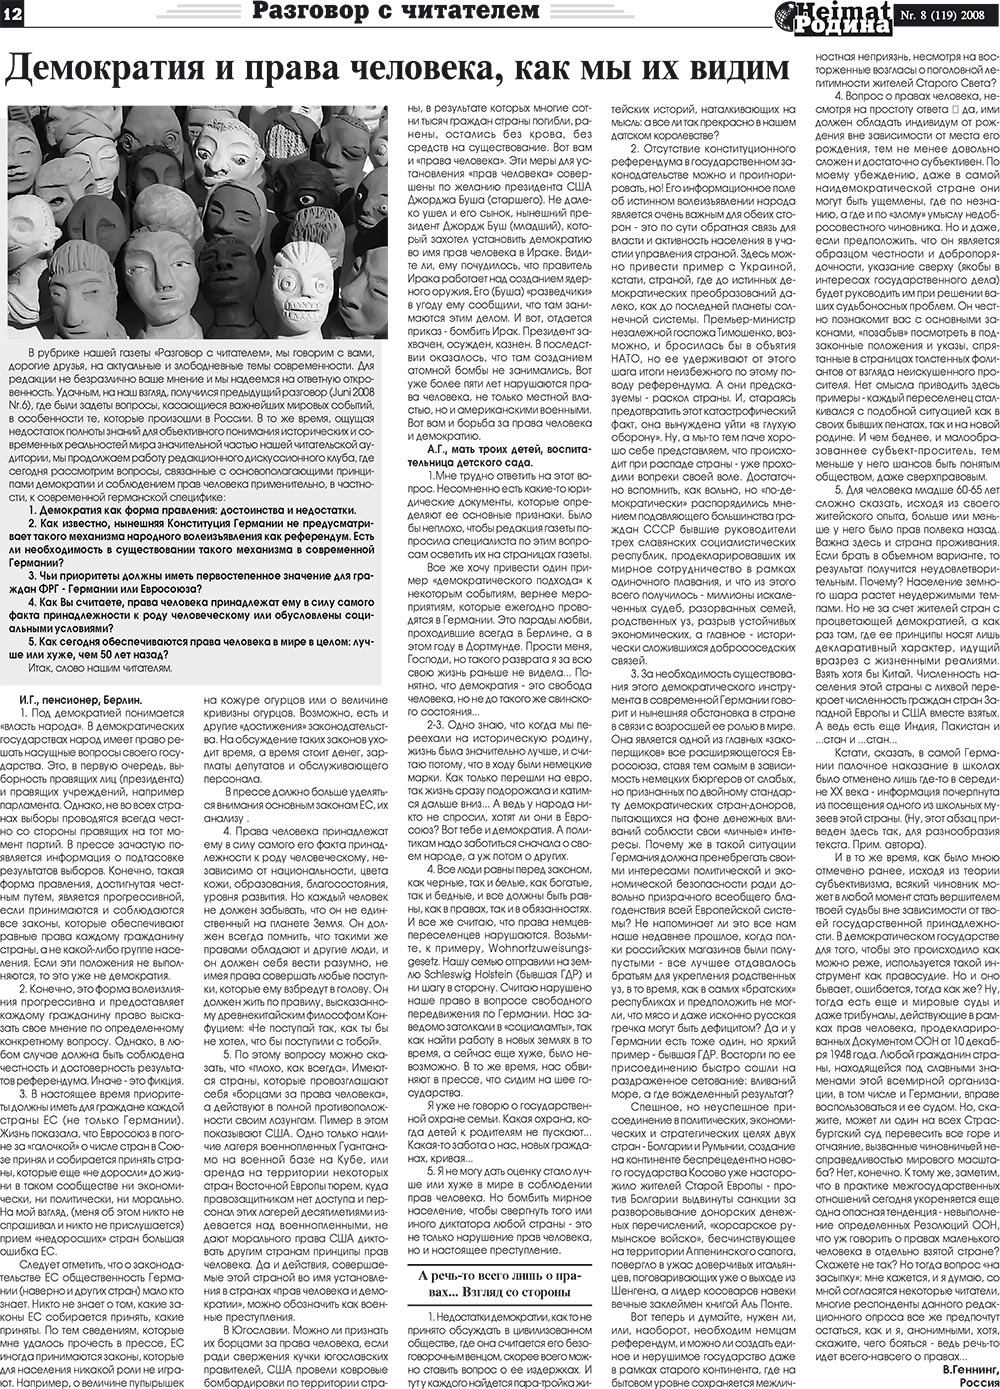 Heimat-Родина (газета). 2008 год, номер 8, стр. 12